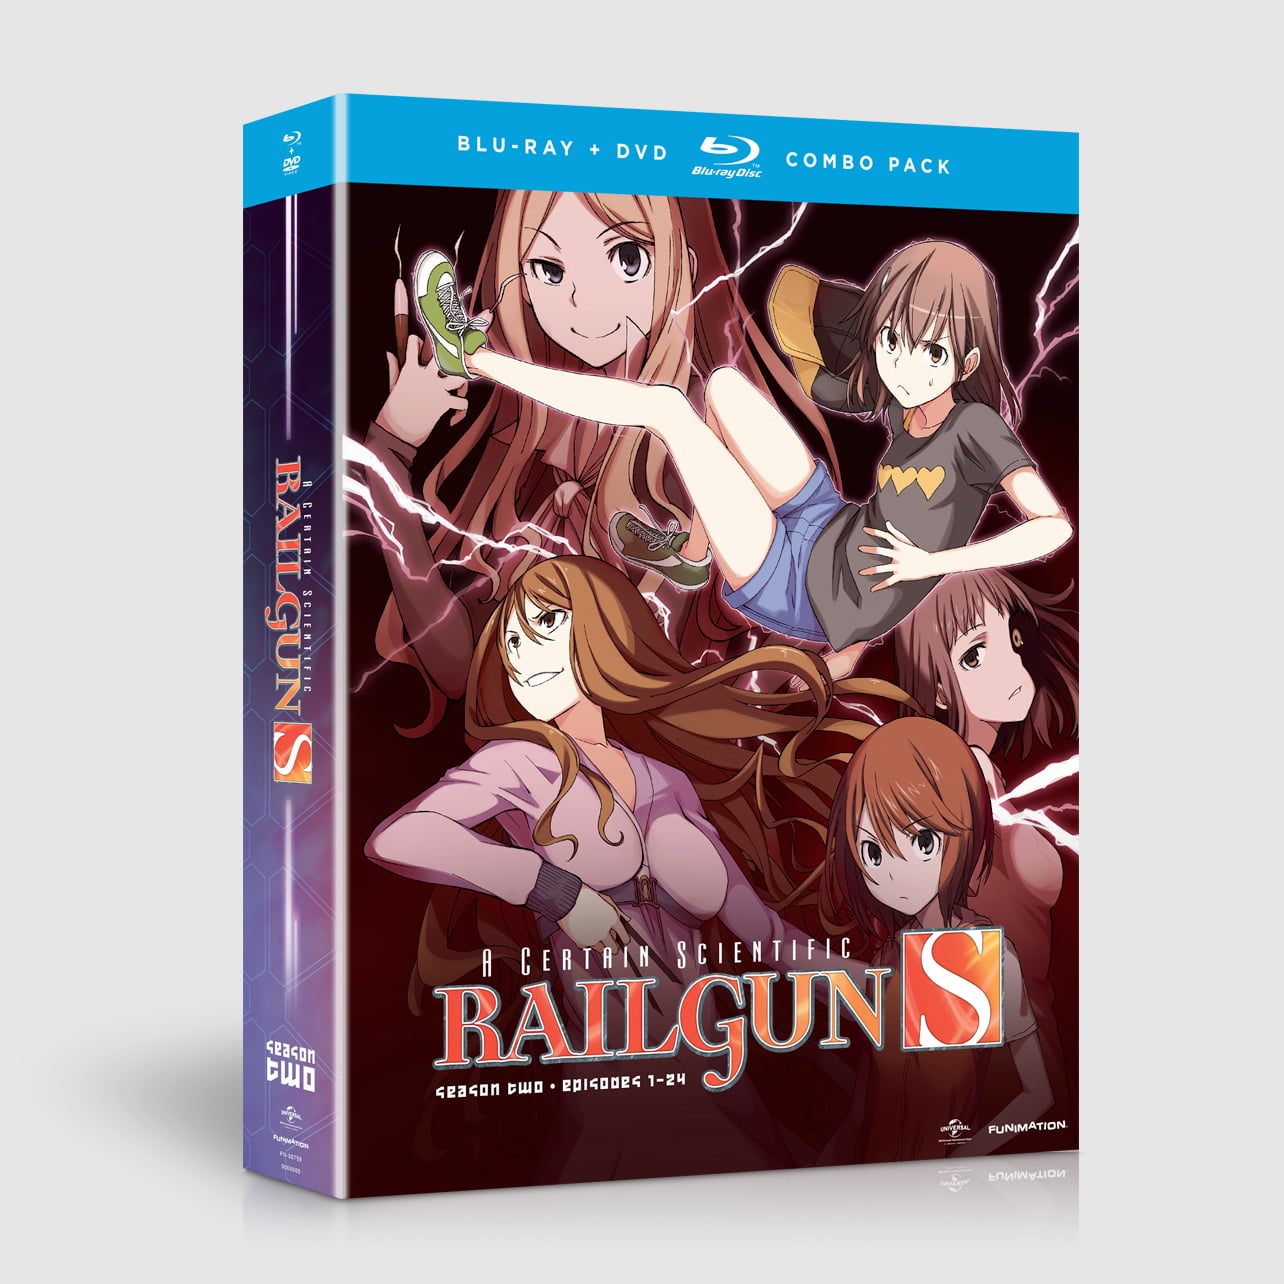 A Certain Scientific Railgun S - Season 2 - Blu-ray + DVD image count 0